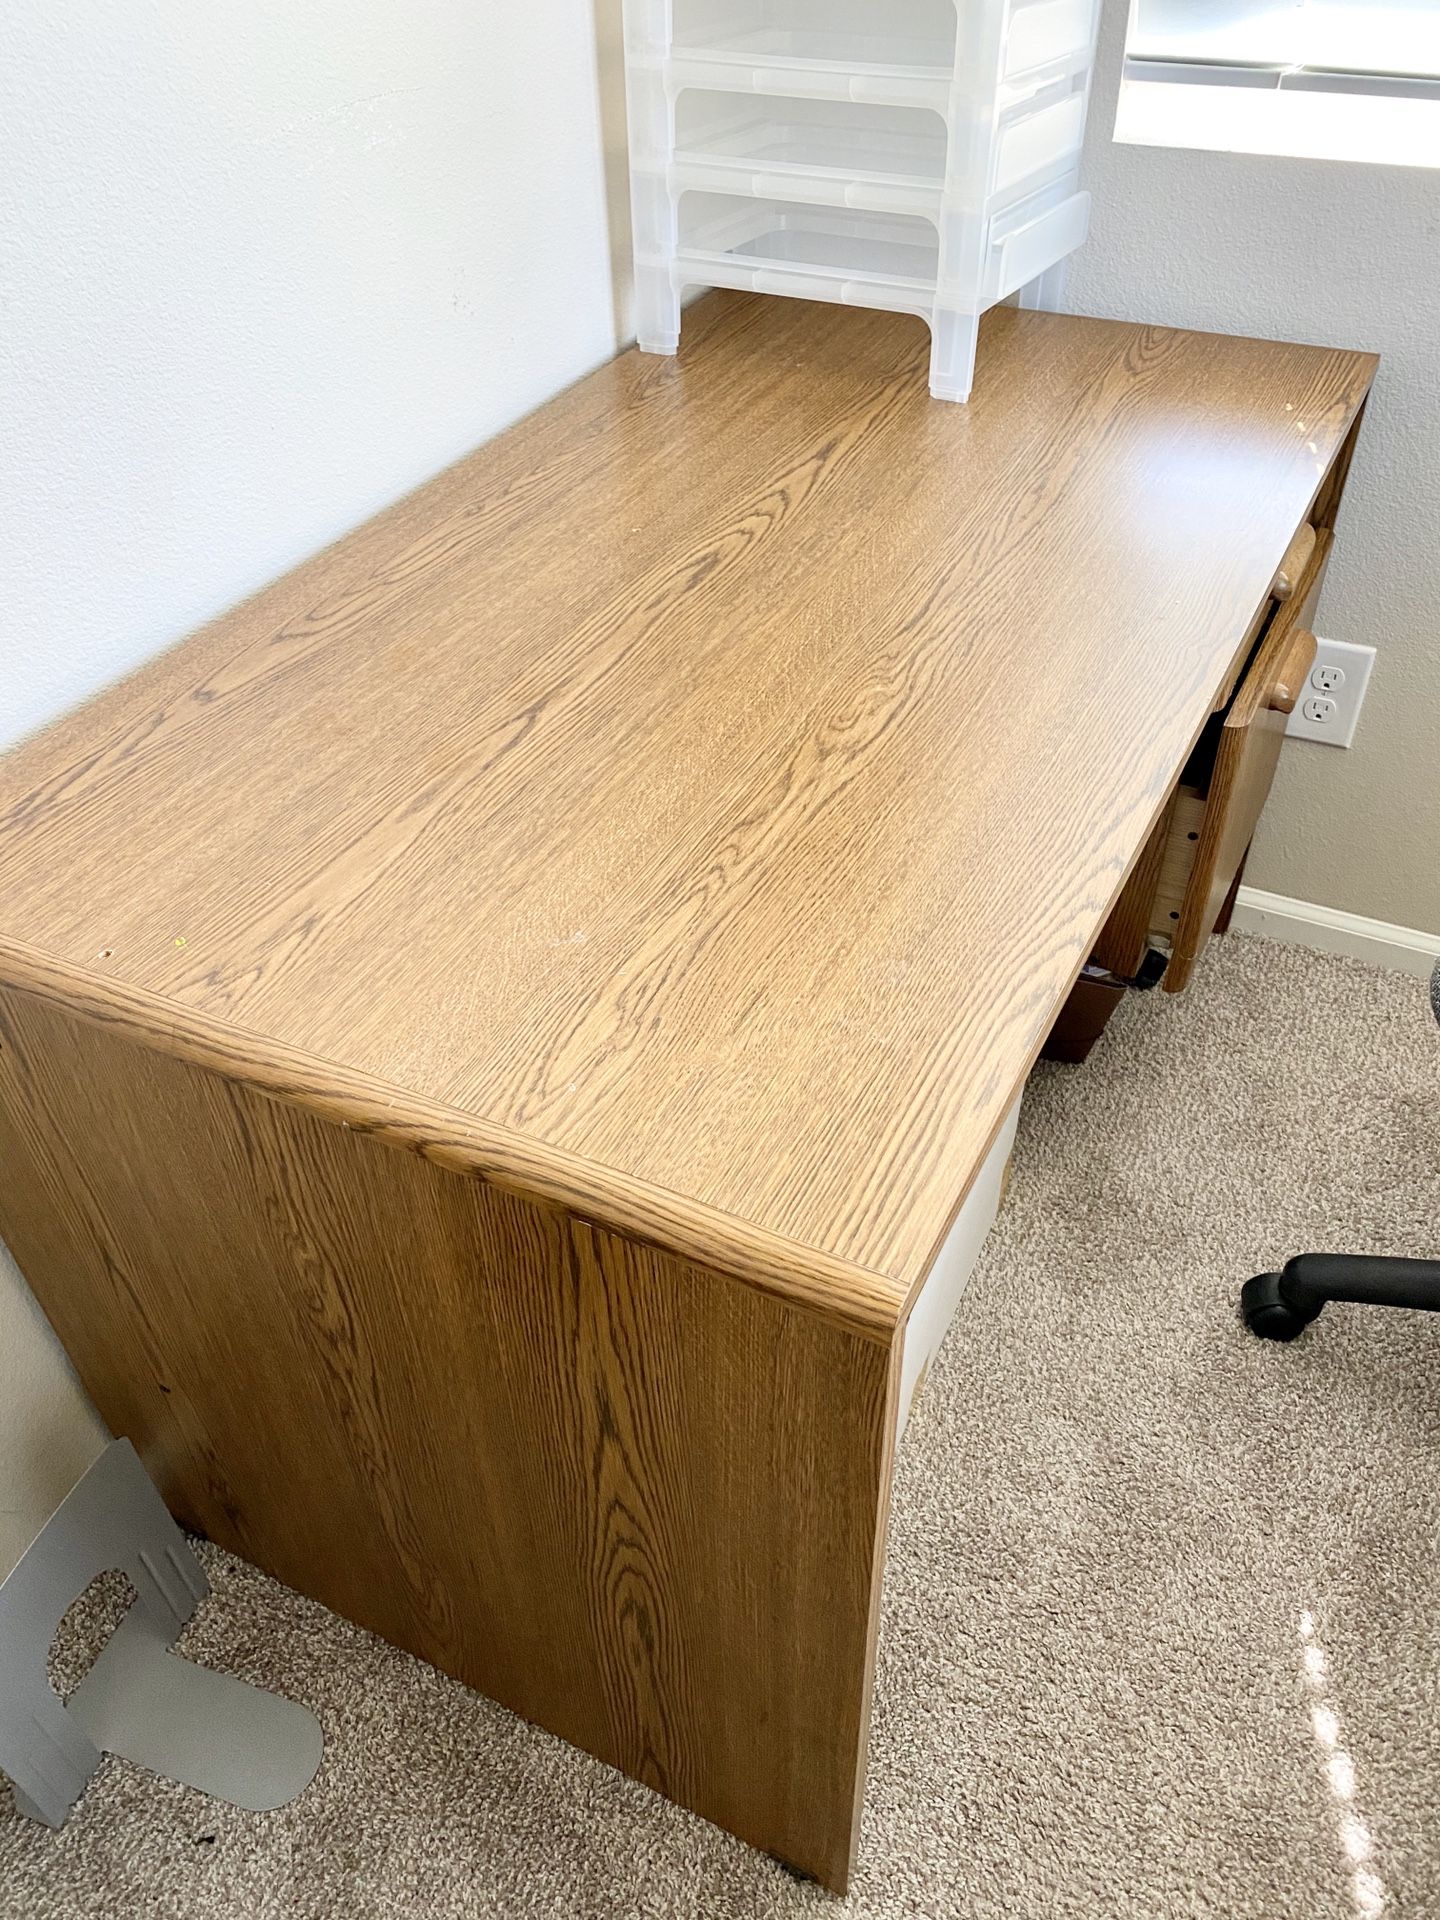 large wooden desk